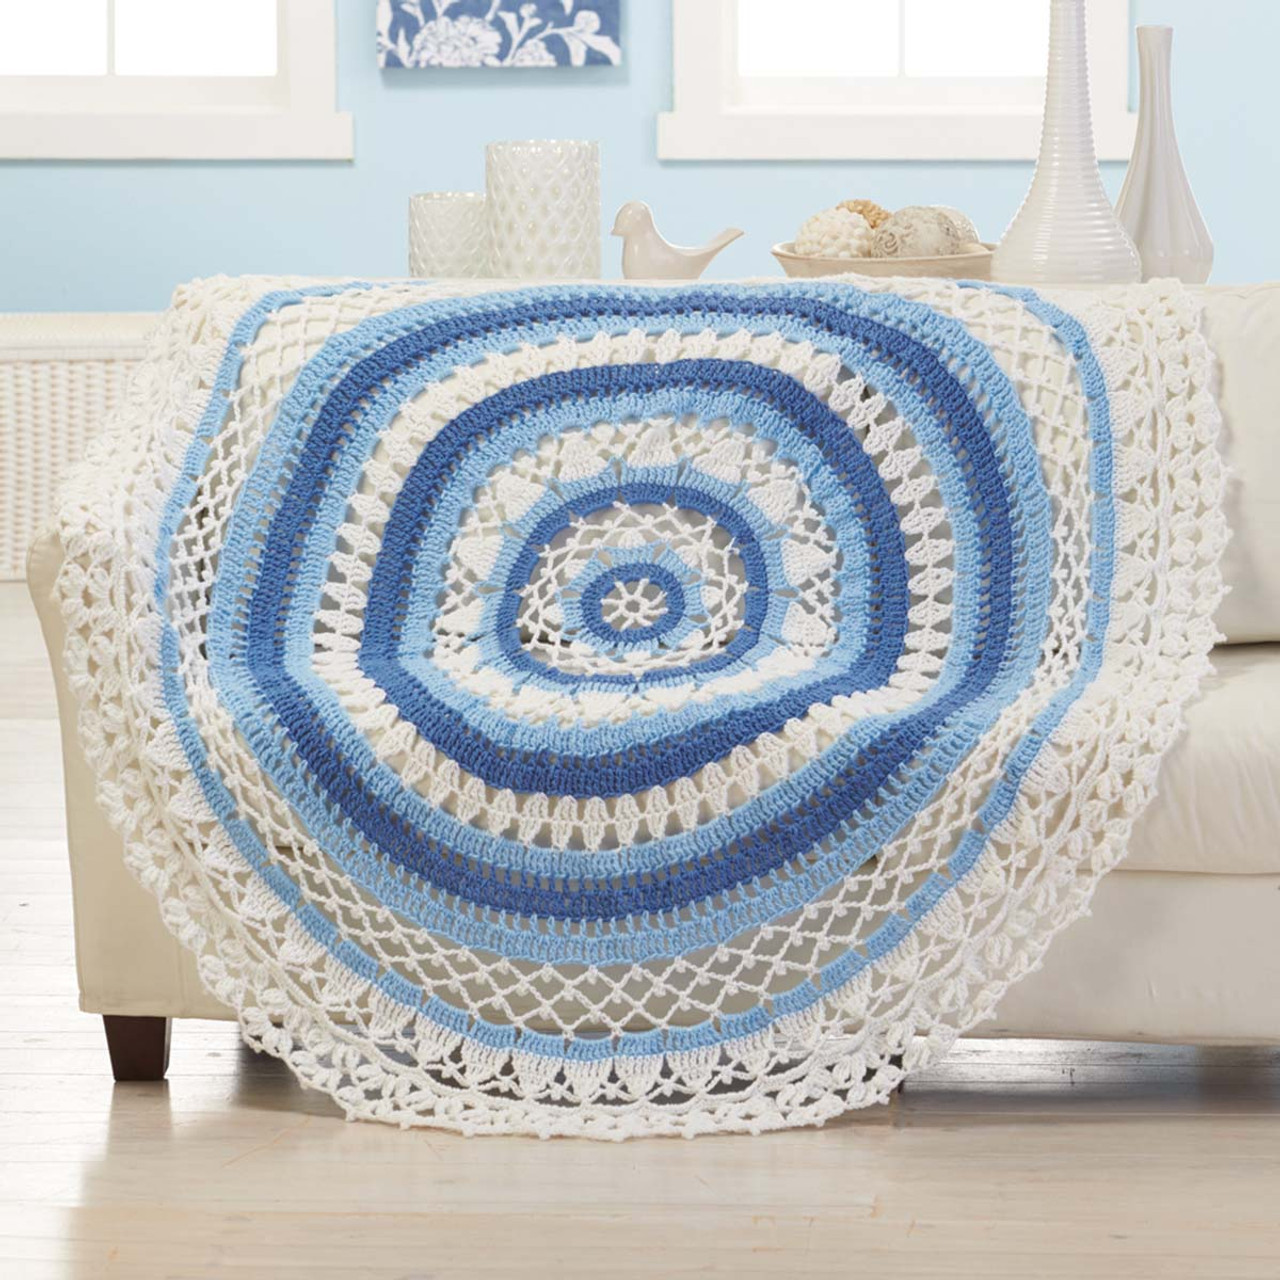  Herrschners Happy Birthday Blanket Crochet Kit